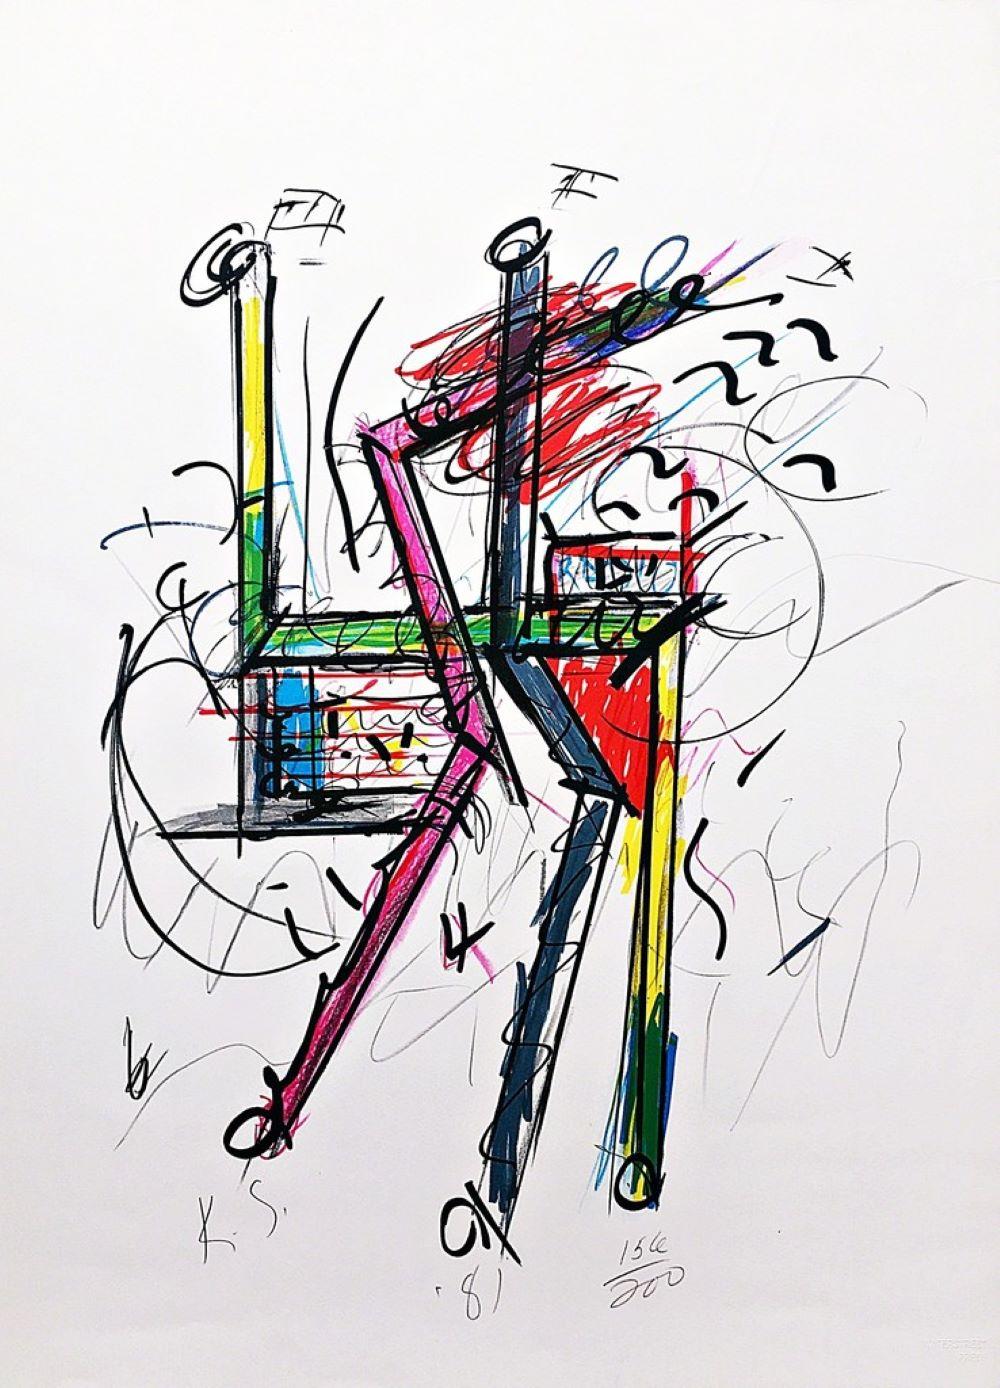 Keith Sonnier
Unbenanntes skulpturales Bild, 1981
Lithographie auf Velinpapier
Signiert, nummeriert 156/200 und datiert in Graphitstift auf der Vorderseite
Veröffentlicht von Waterstreet Press mit Blindstempel
29 4/5 × 21 3/4